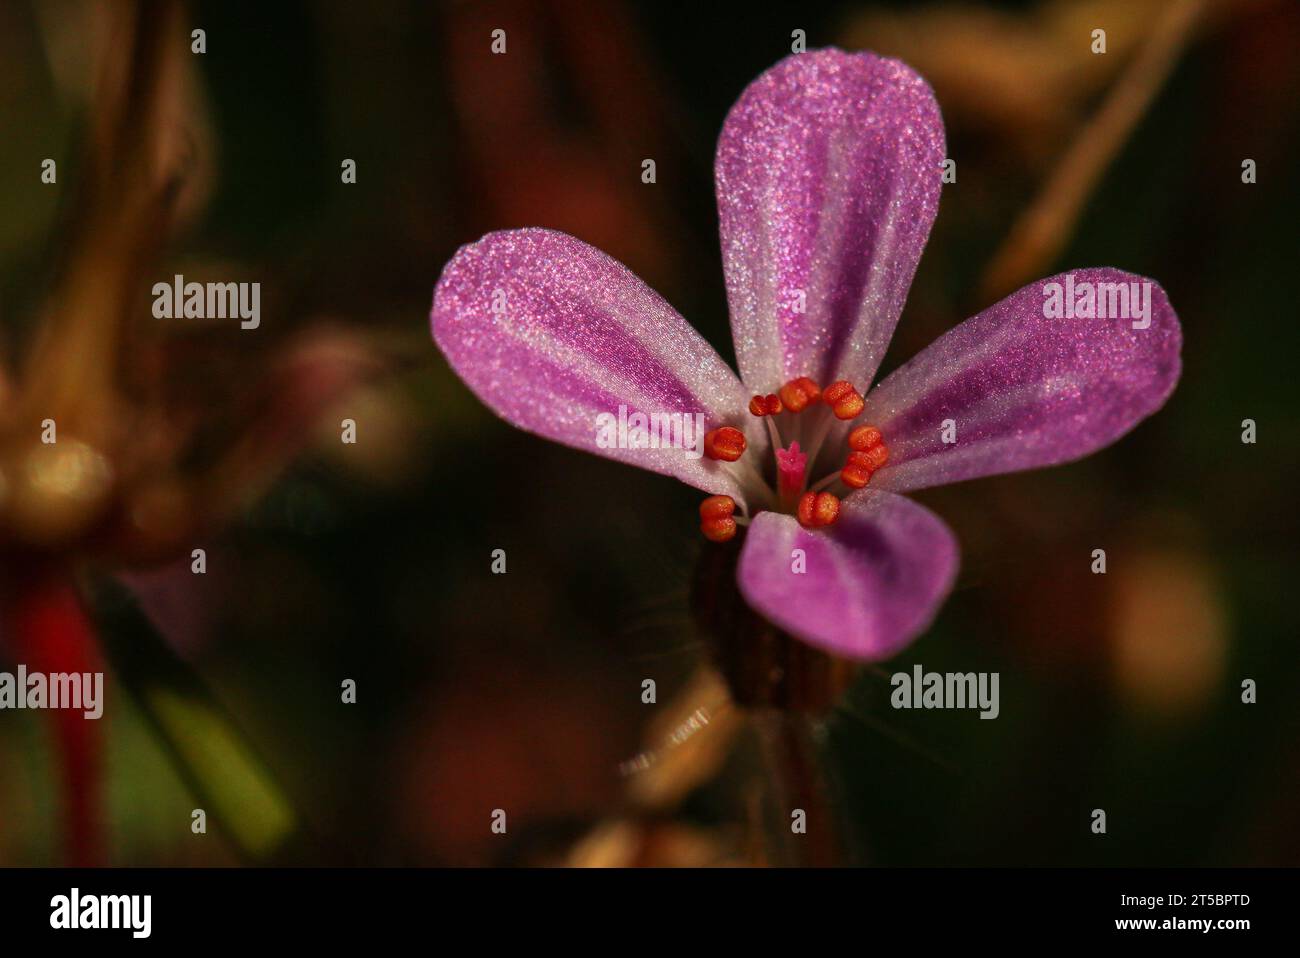 Herb-Robert (Geranium robertianum) or Roberts geranium Stock Photo